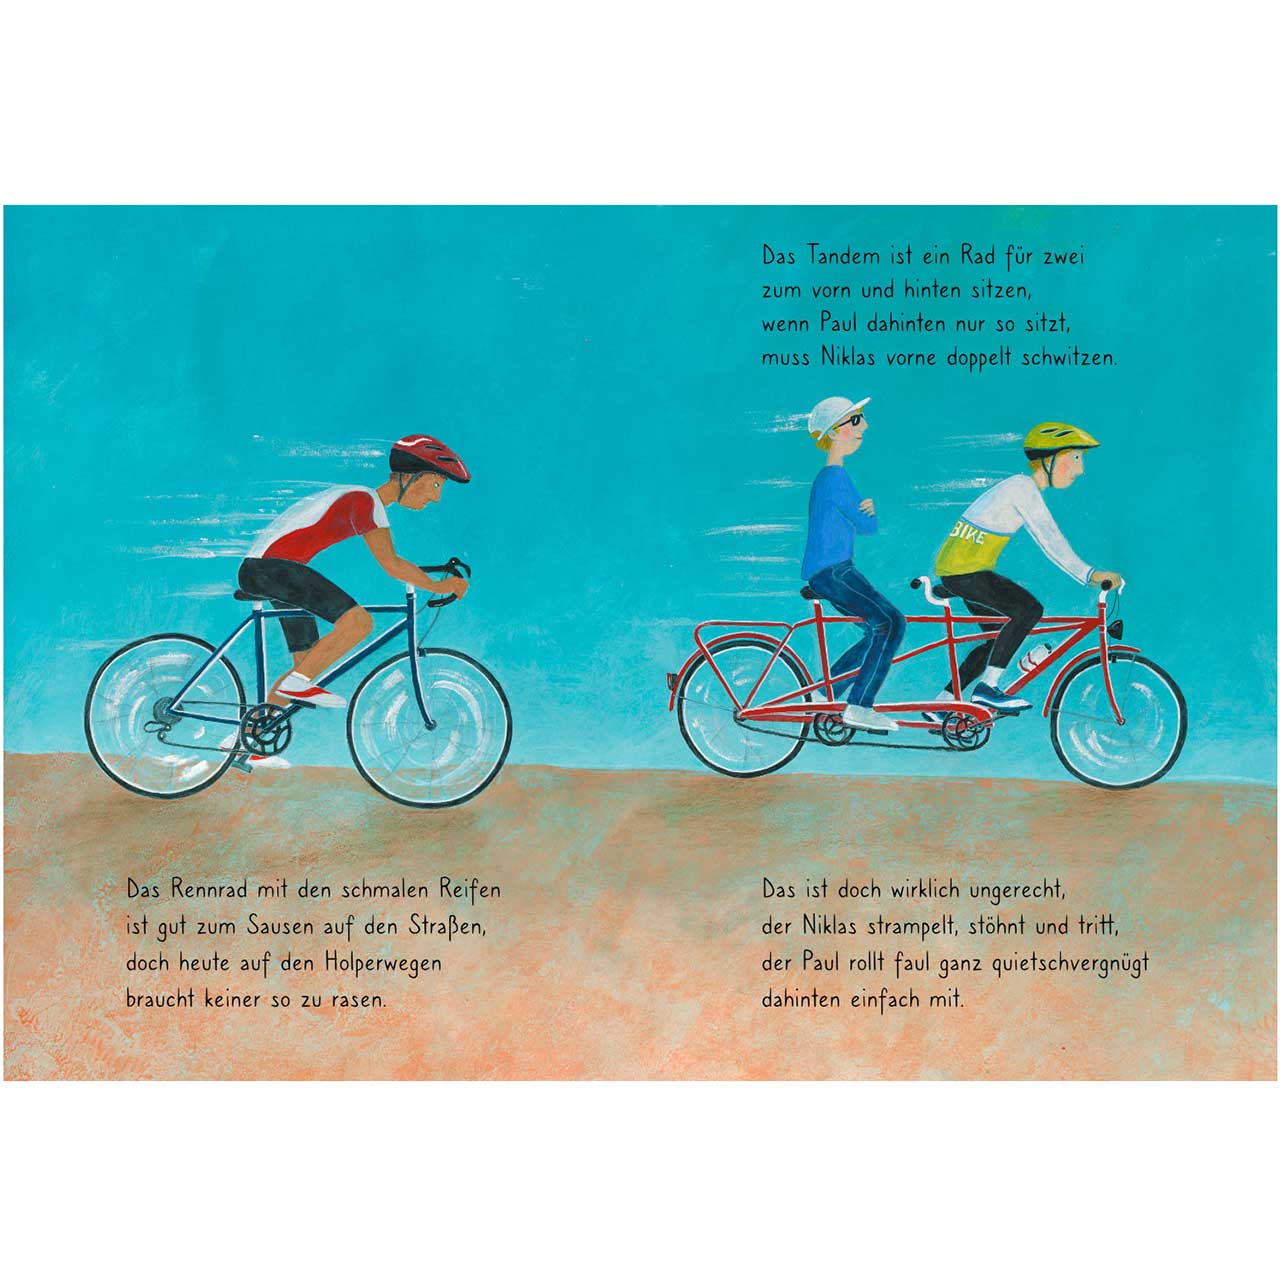 Rauf aufs Fahrrad, fertig, los! - Kinderbuch ab 3 Jahren